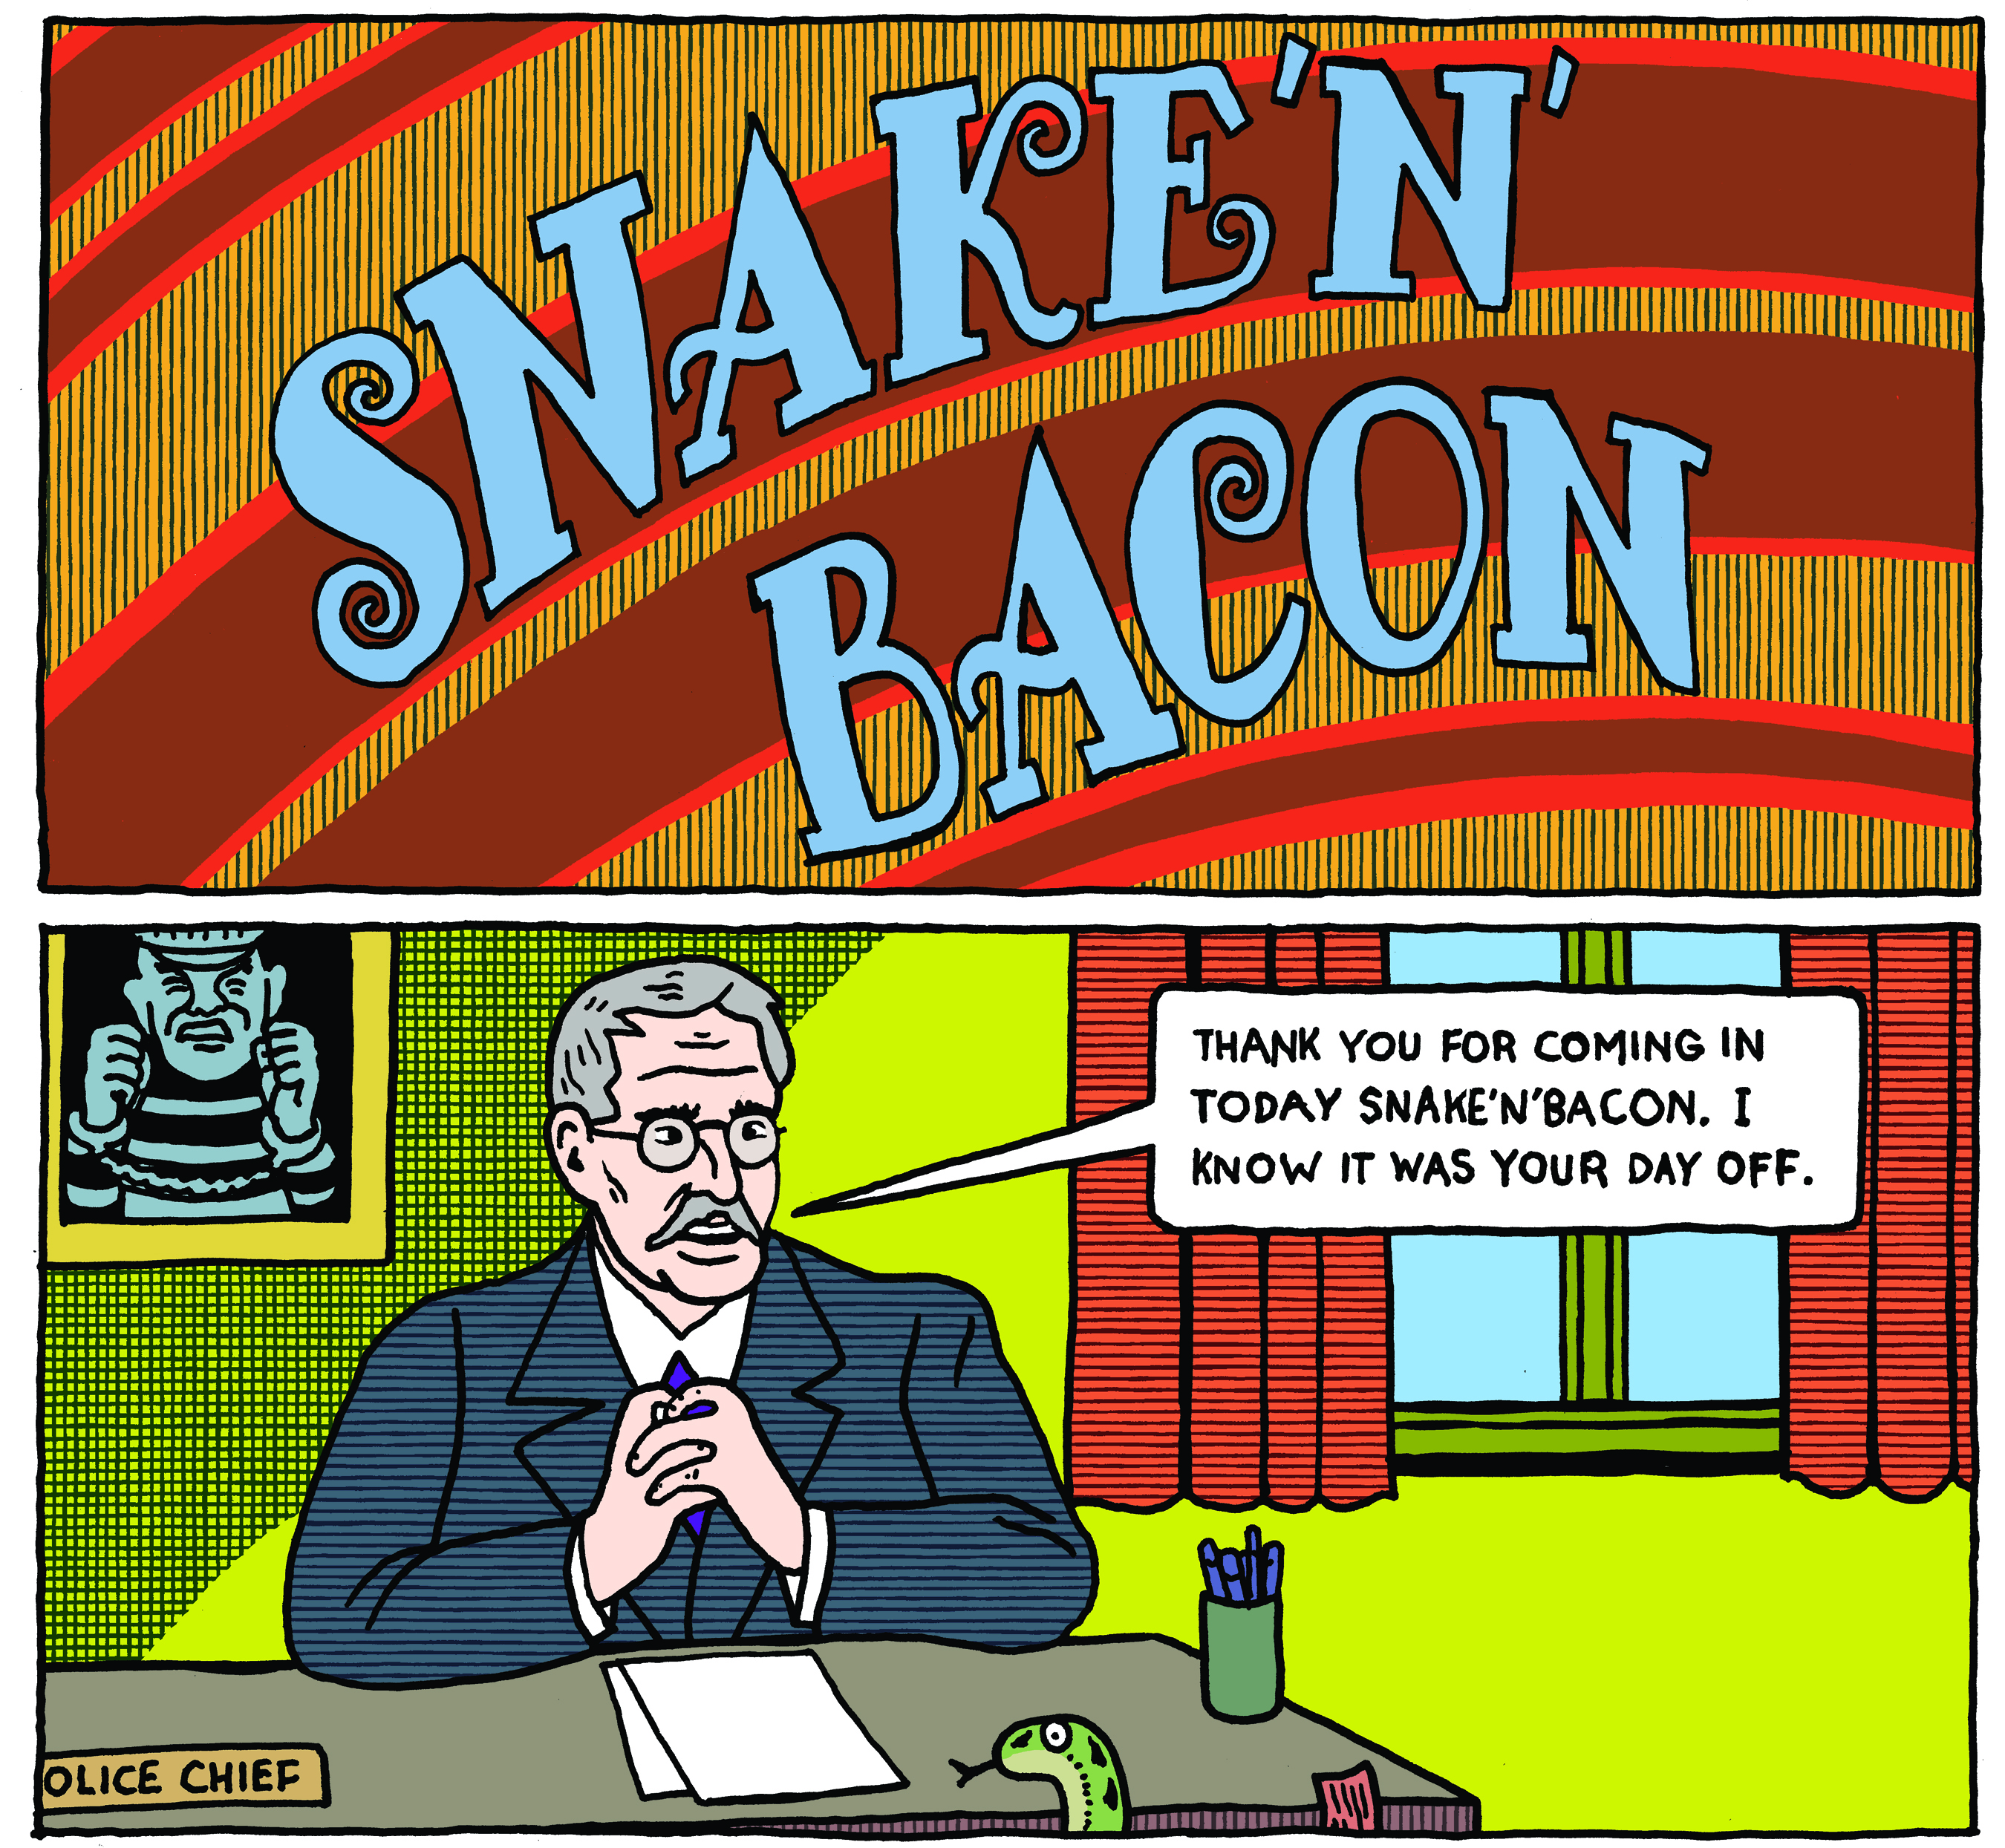 Snake n bacon